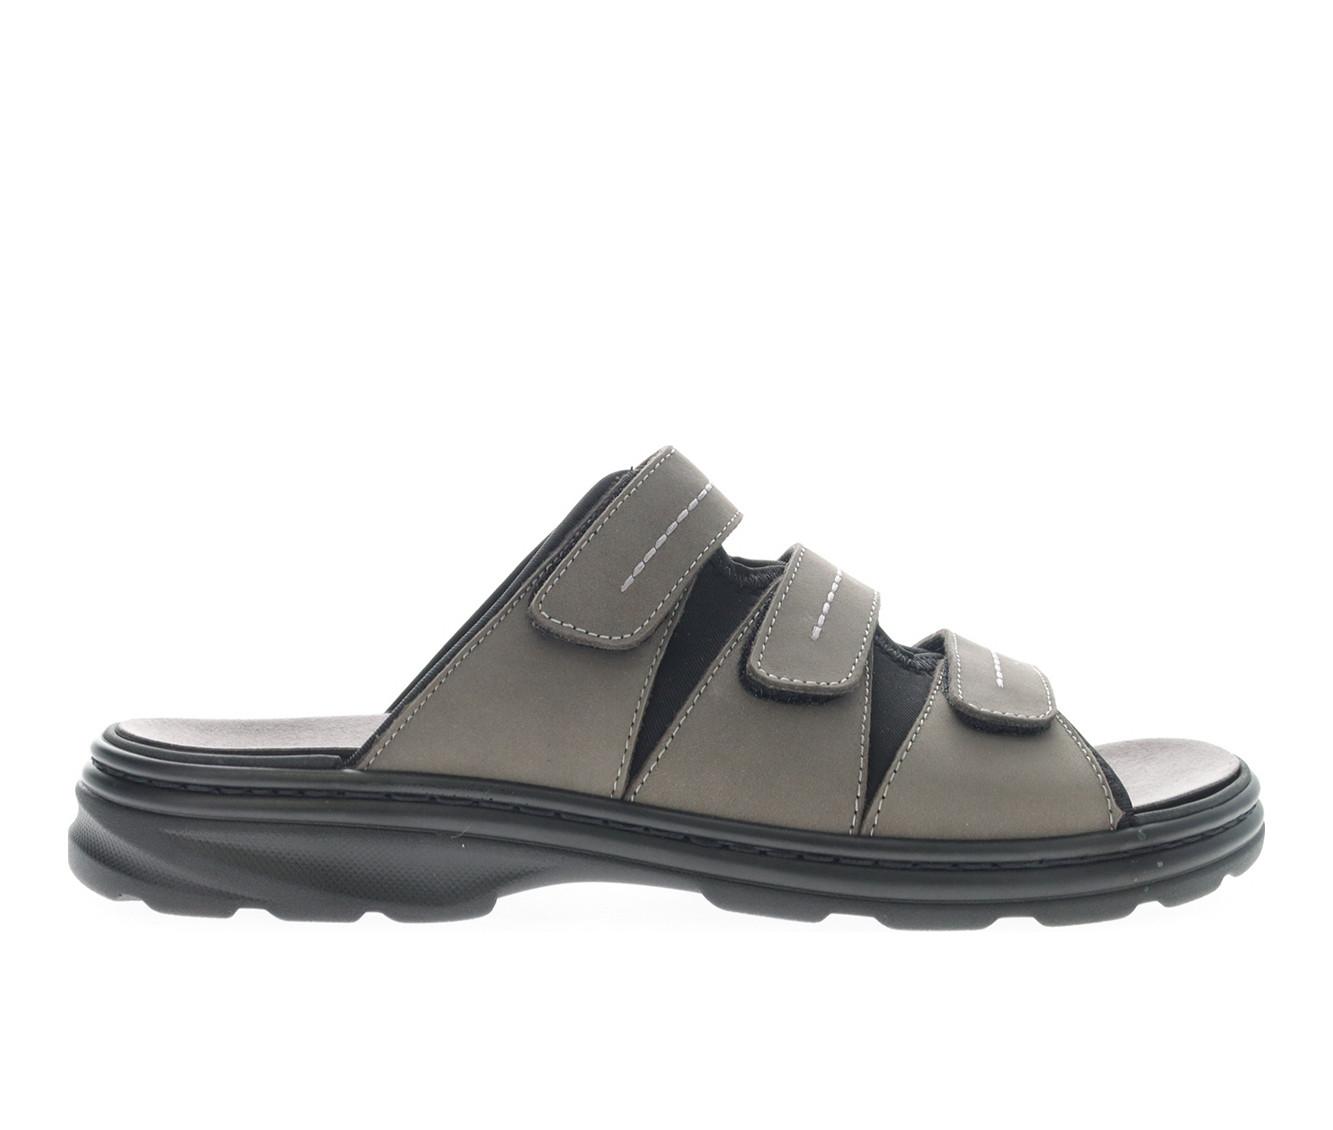 Men's Propet Hatcher Outdoor Sandals